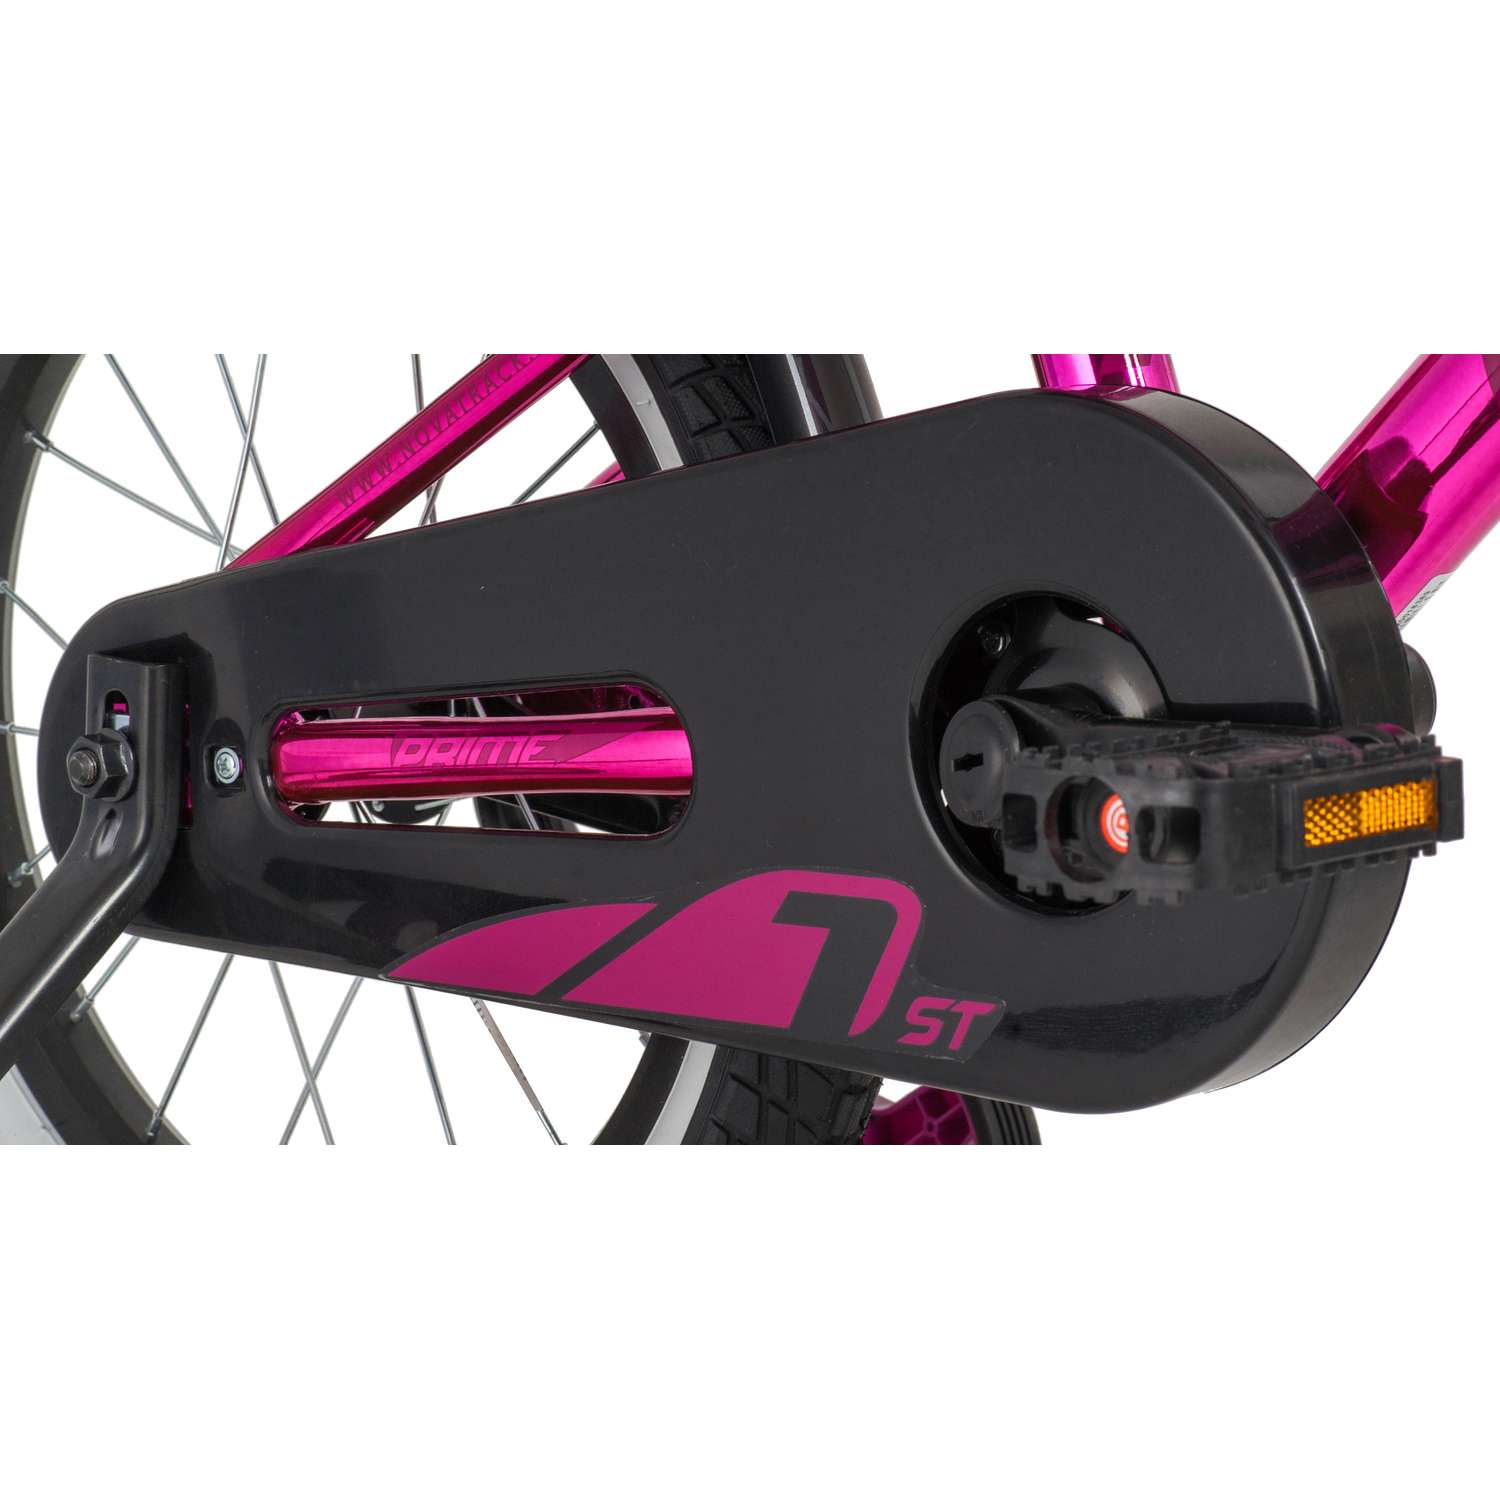 Велосипед NOVATRACK Prime AG 16 розовый металлик - фото 6